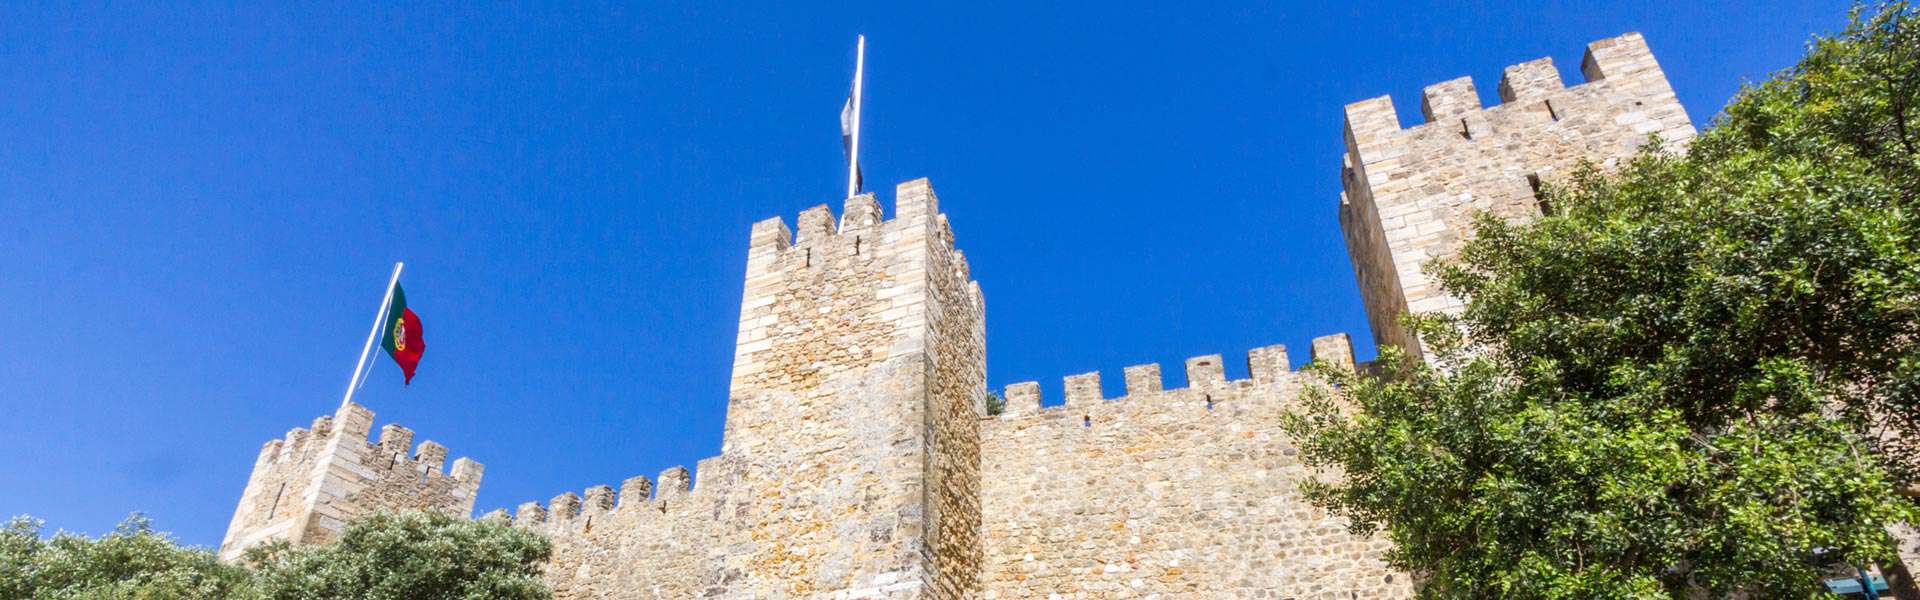 Geschichte erleben: Besuchen Sie das Castelo de Sao Jorge in Lissabon